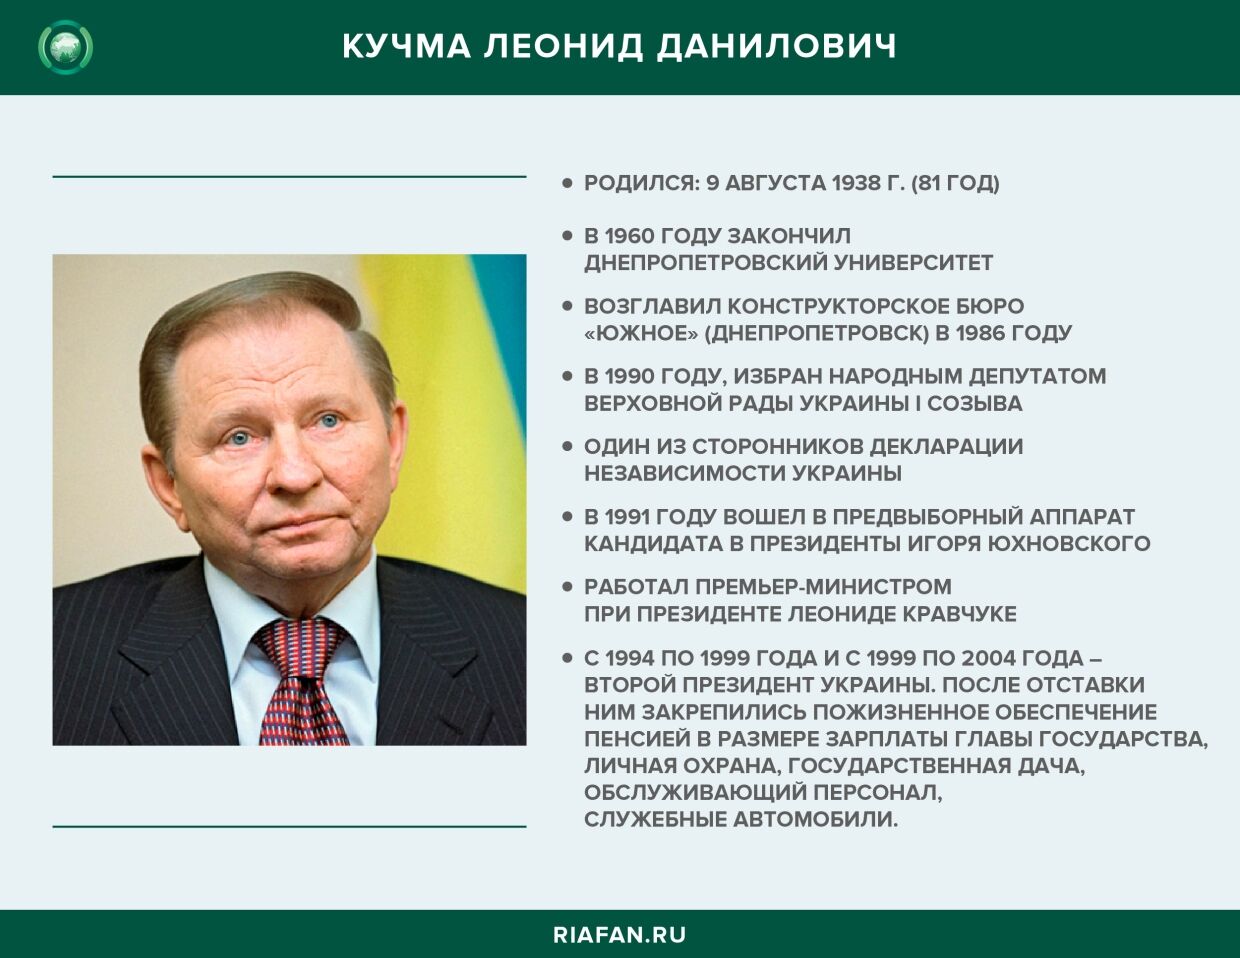 Бывший президент Украины Кучма Леонид Данилович